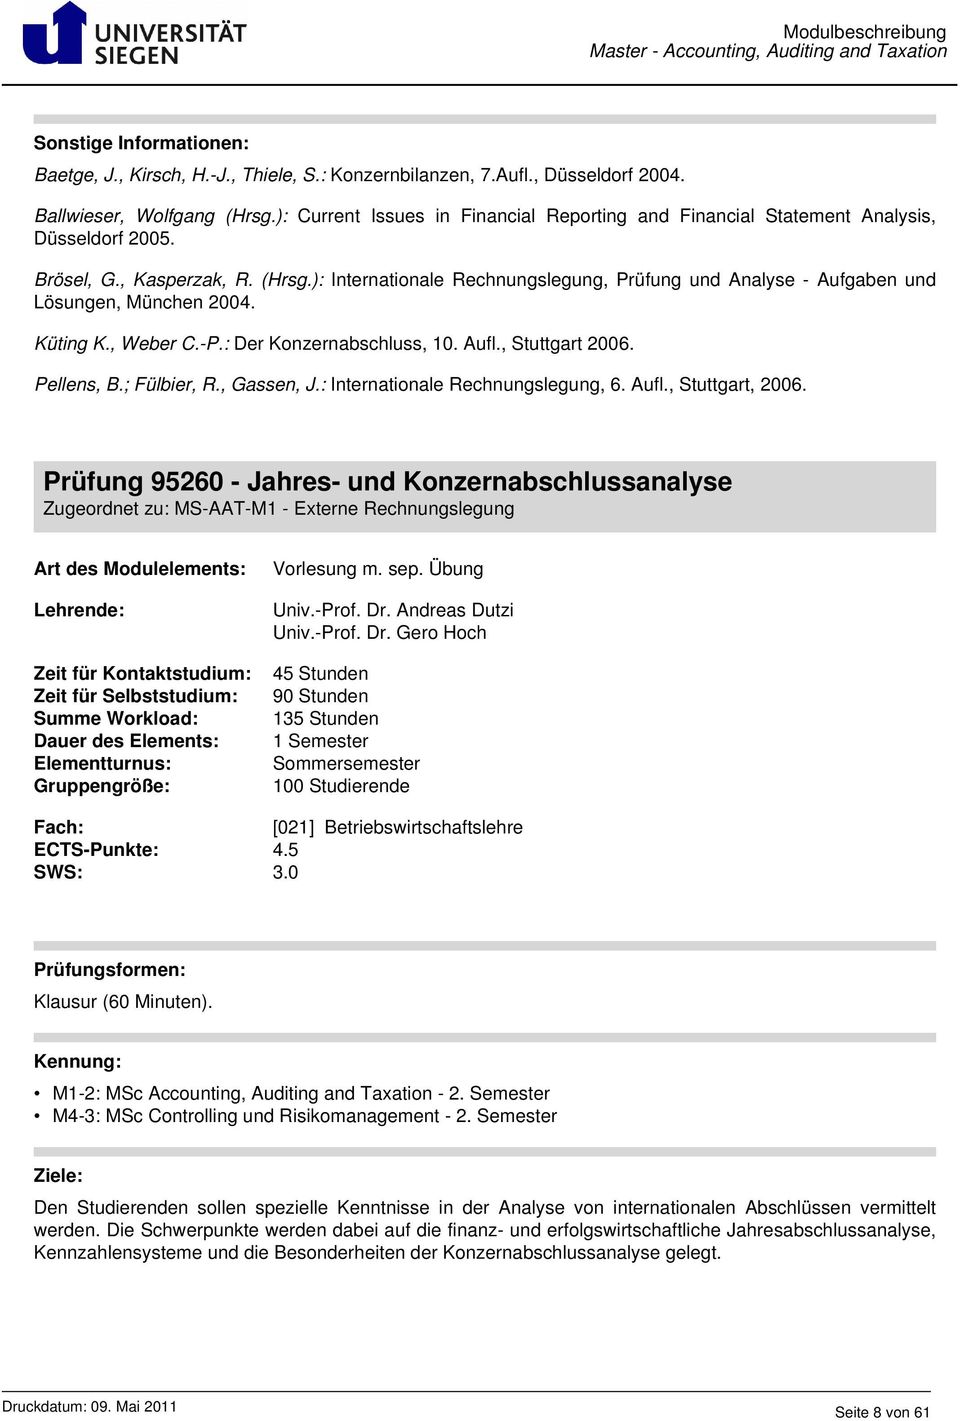 ): Internationale Rechnungslegung, Prüfung und Analyse - Aufgaben und Lösungen, München 2004. Küting K., Weber C.-P.: Der Konzernabschluss, 10. Aufl., Stuttgart 2006. Pellens, B.; Fülbier, R.